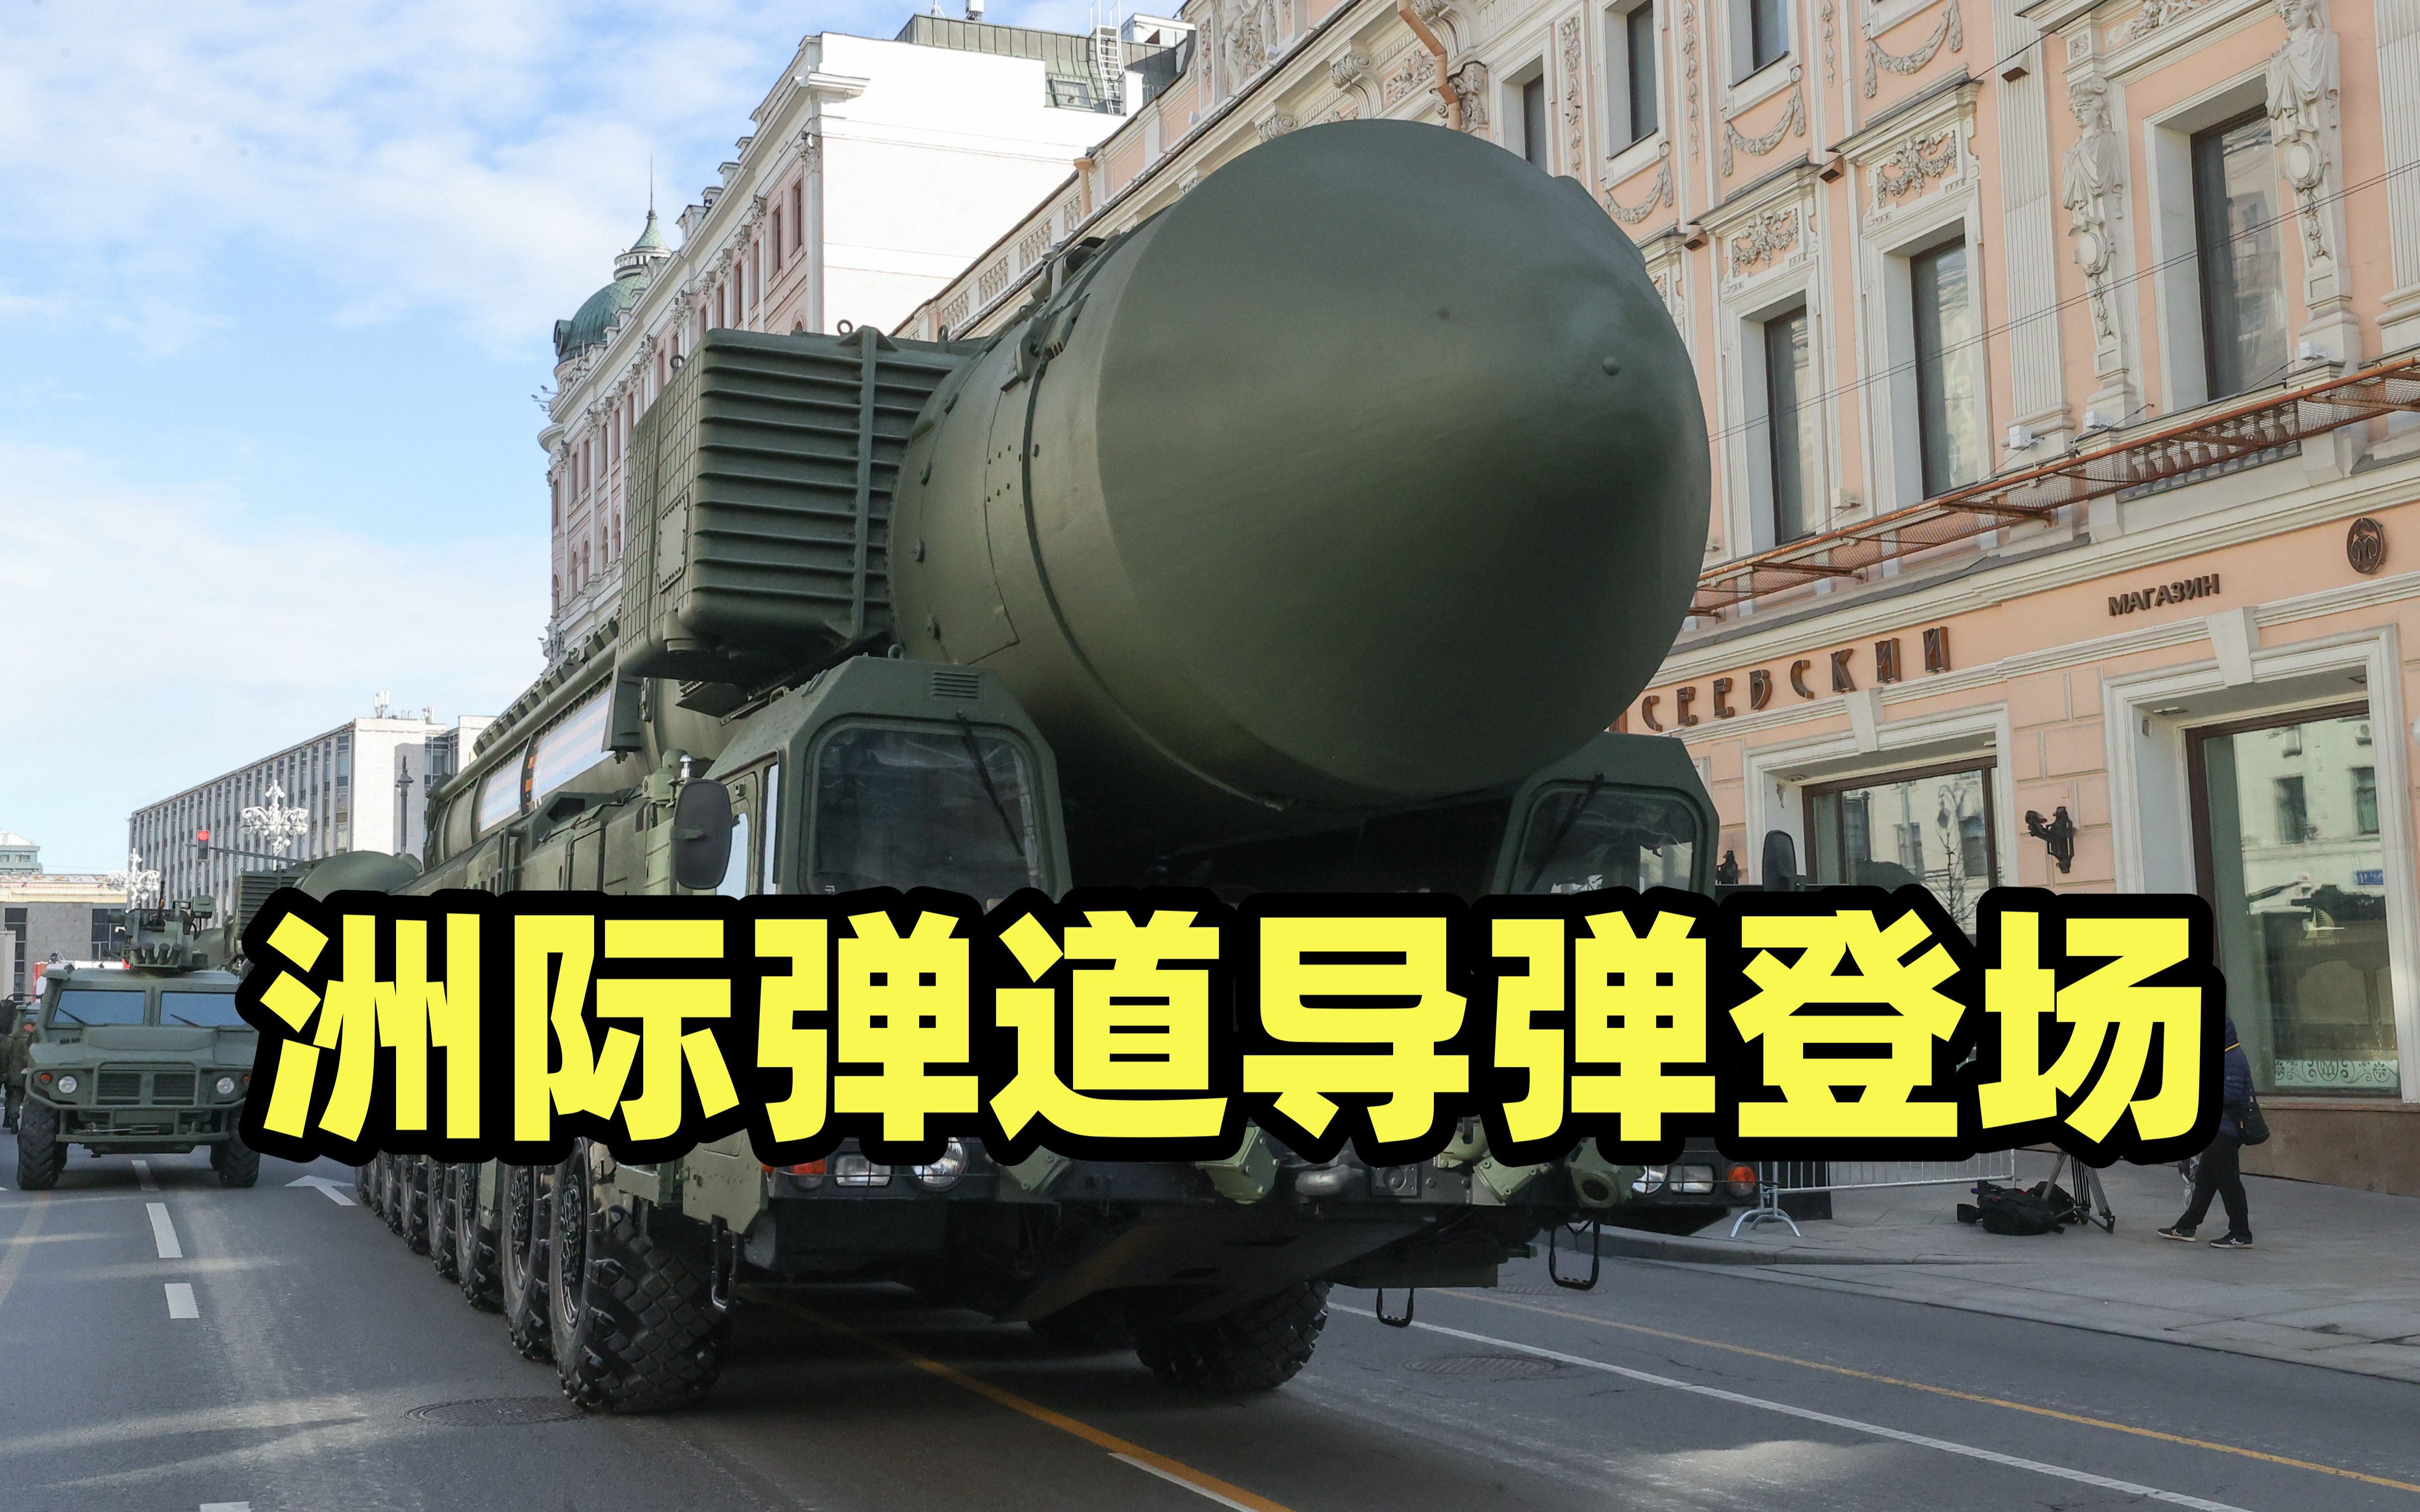 亚尔斯洲际弹道导弹登场为俄罗斯遏制美国北约重要军事力量